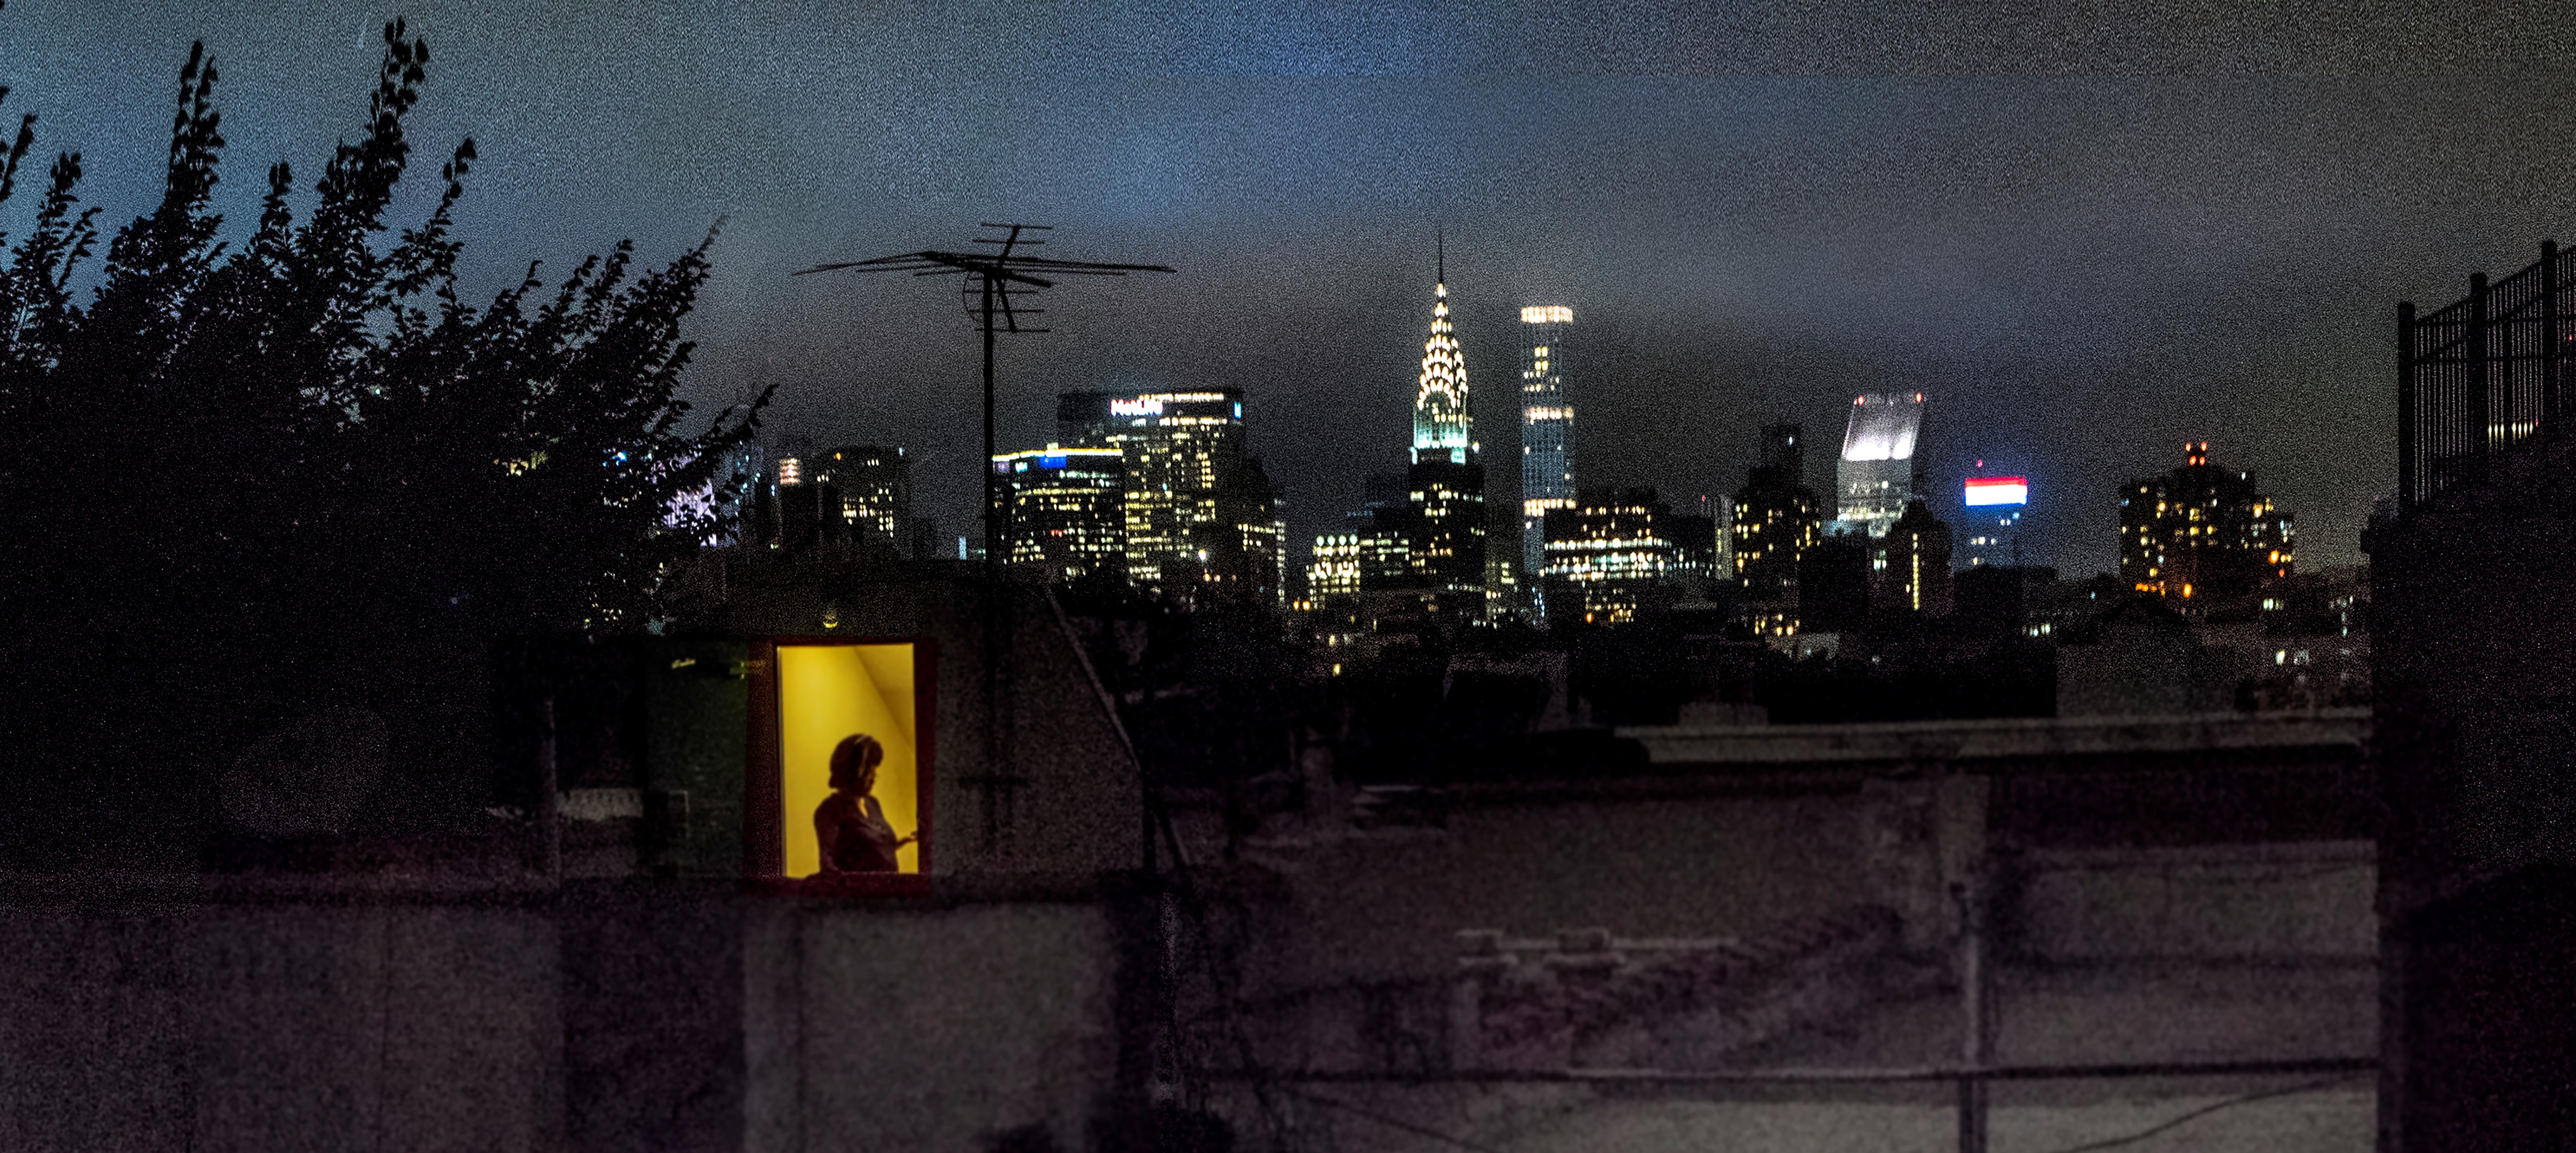 Vista trasera del apartamento de Sally Davies en East 5th Street por la noche con ventanas iluminadas.